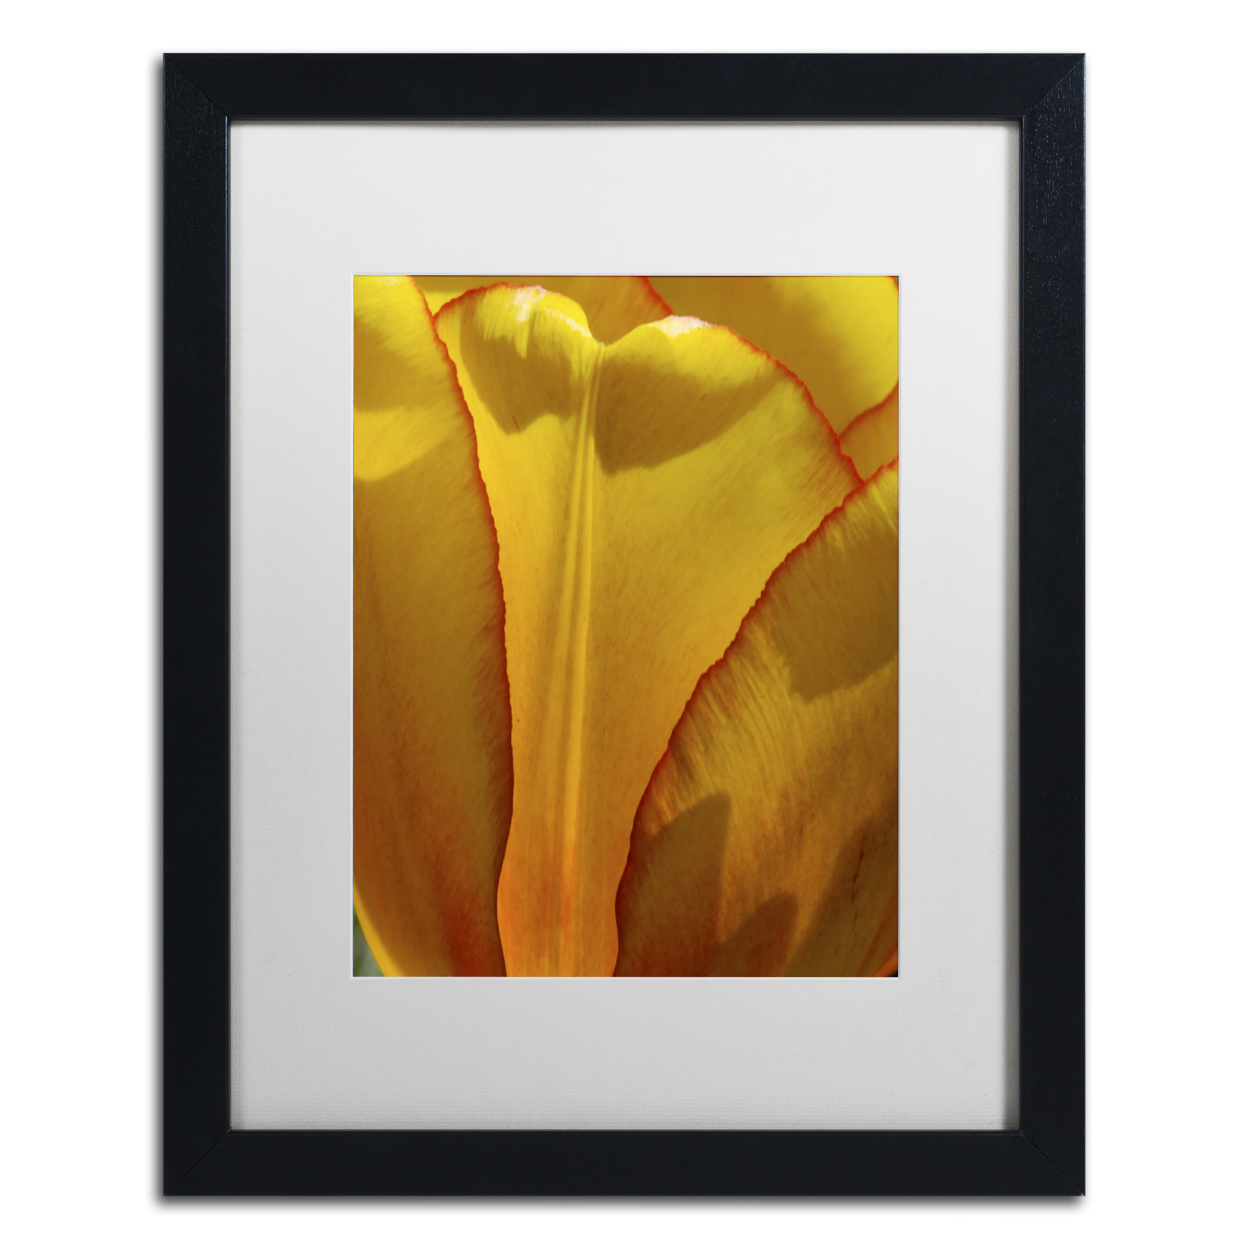 Kurt Shaffer 'Tulip In The Light' Black Wooden Framed Art 18 X 22 Inches